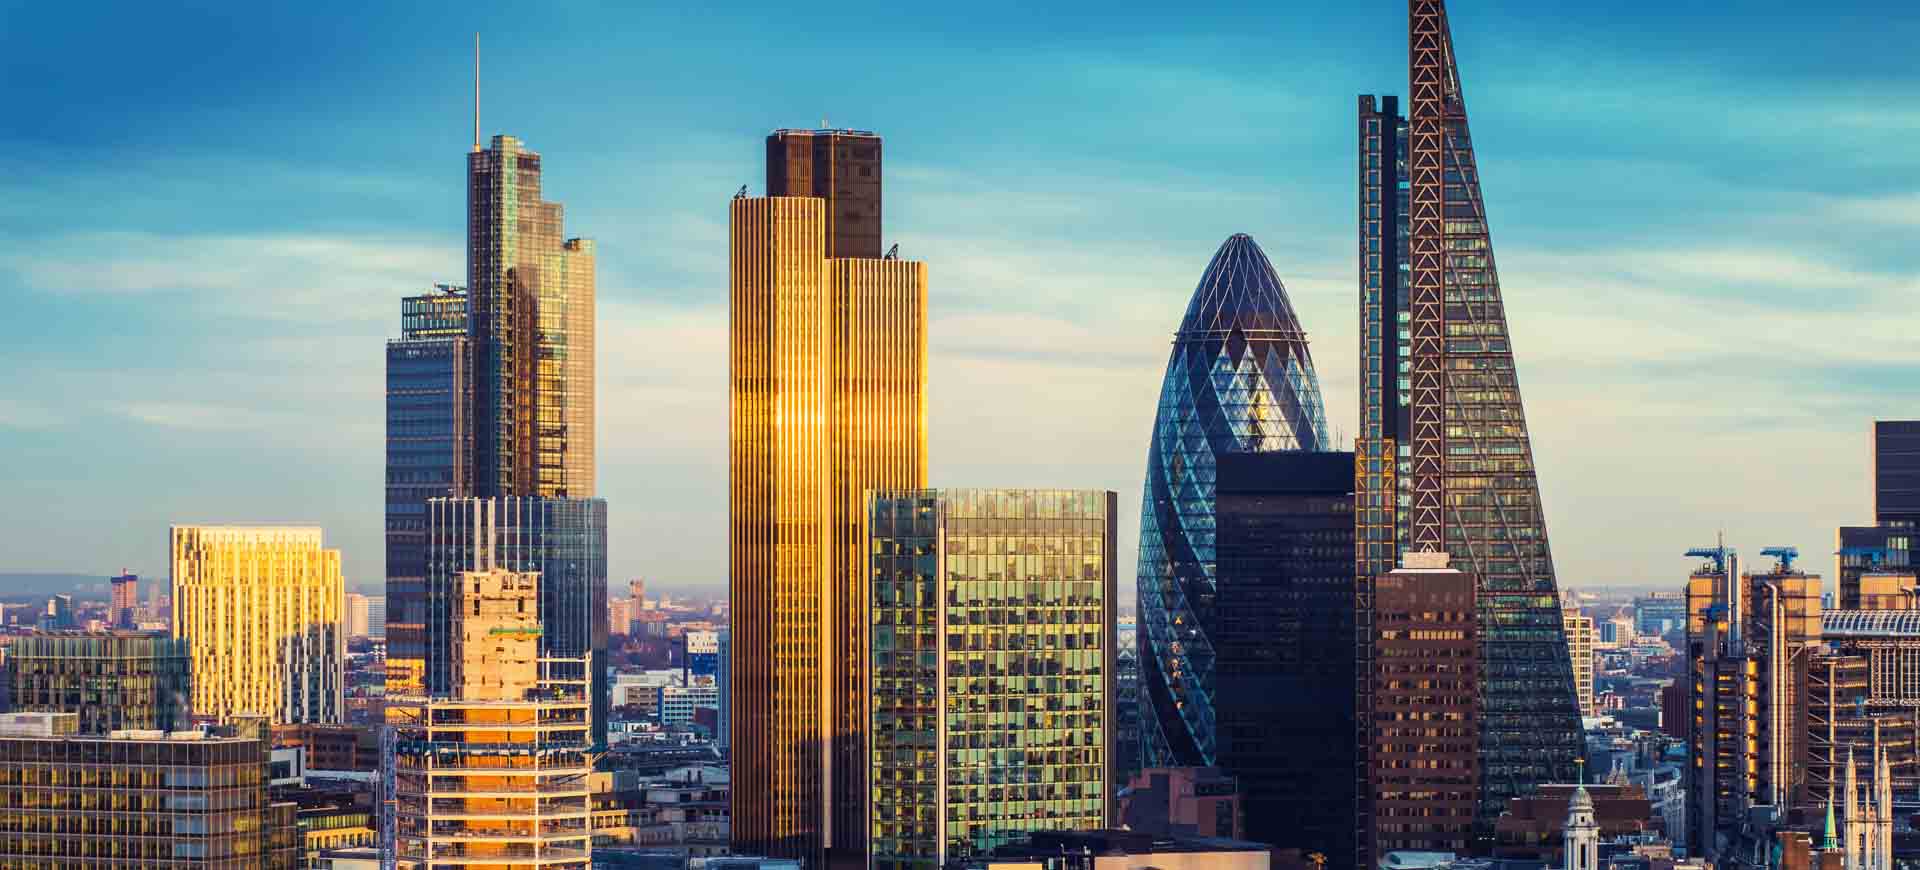 Finance Industry growing in London